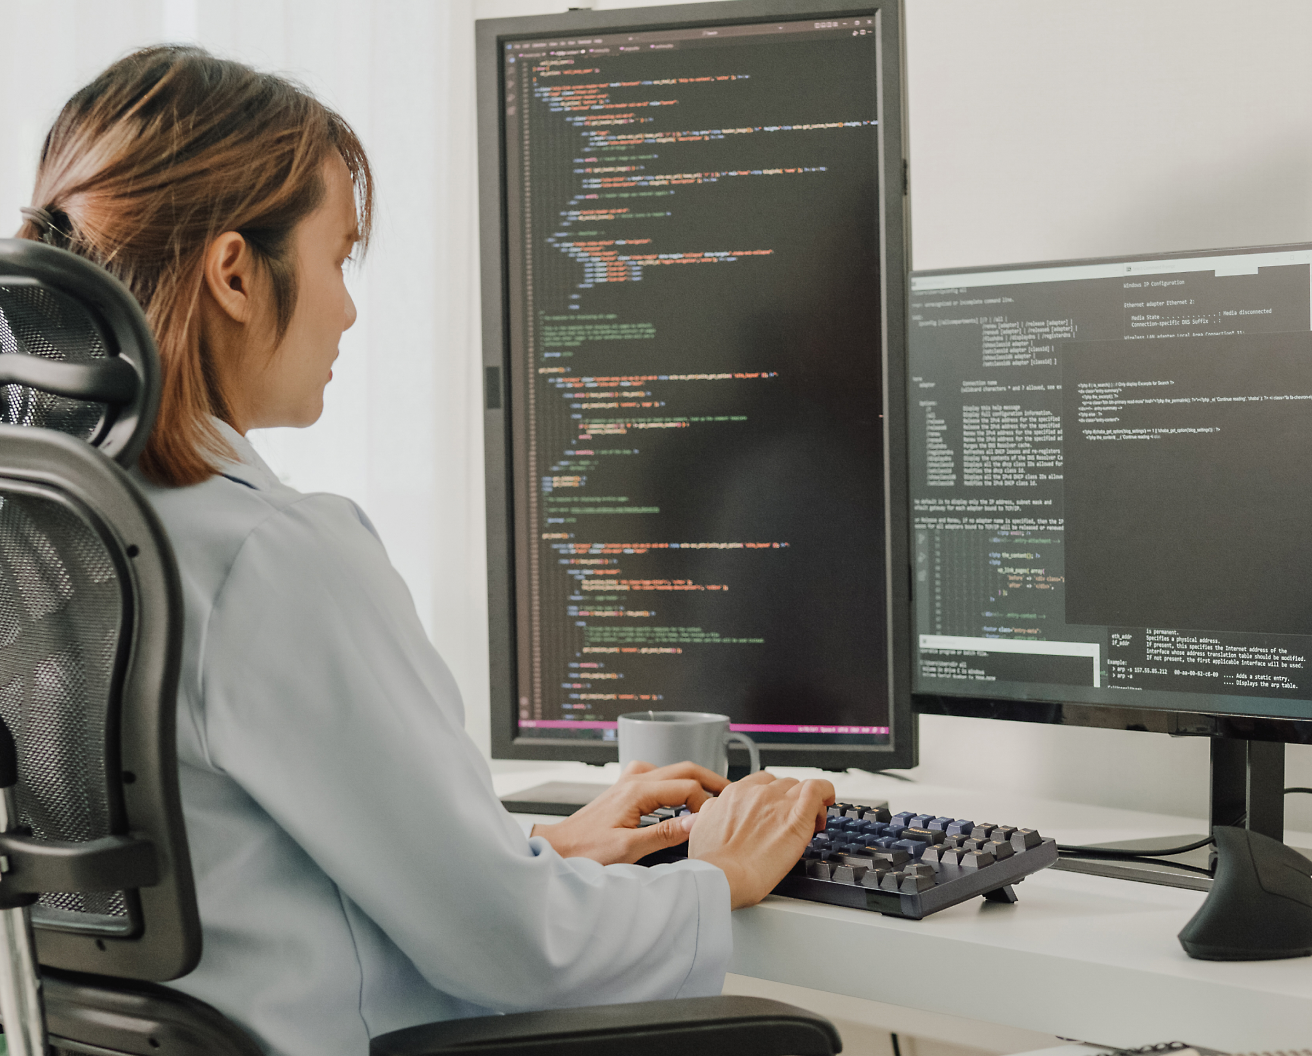 Une femme assise sur une chaise de bureau, en train de coder sur un ordinateur avec plusieurs écrans affichant le code de programmation.